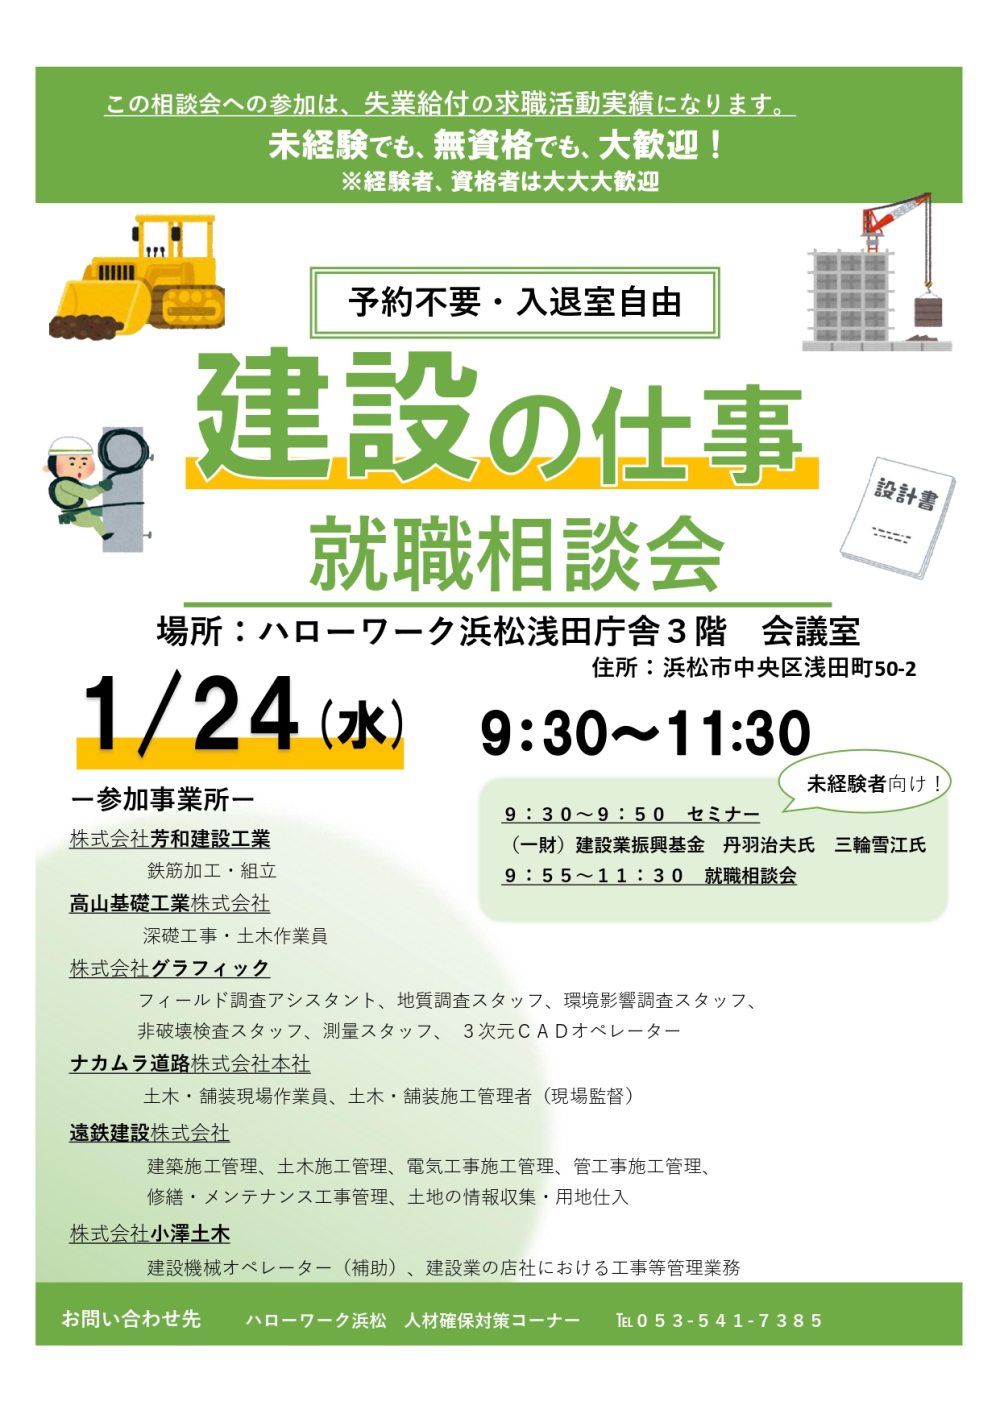 １月24日浜松市にて「建設の仕事」就職相談会に出展します